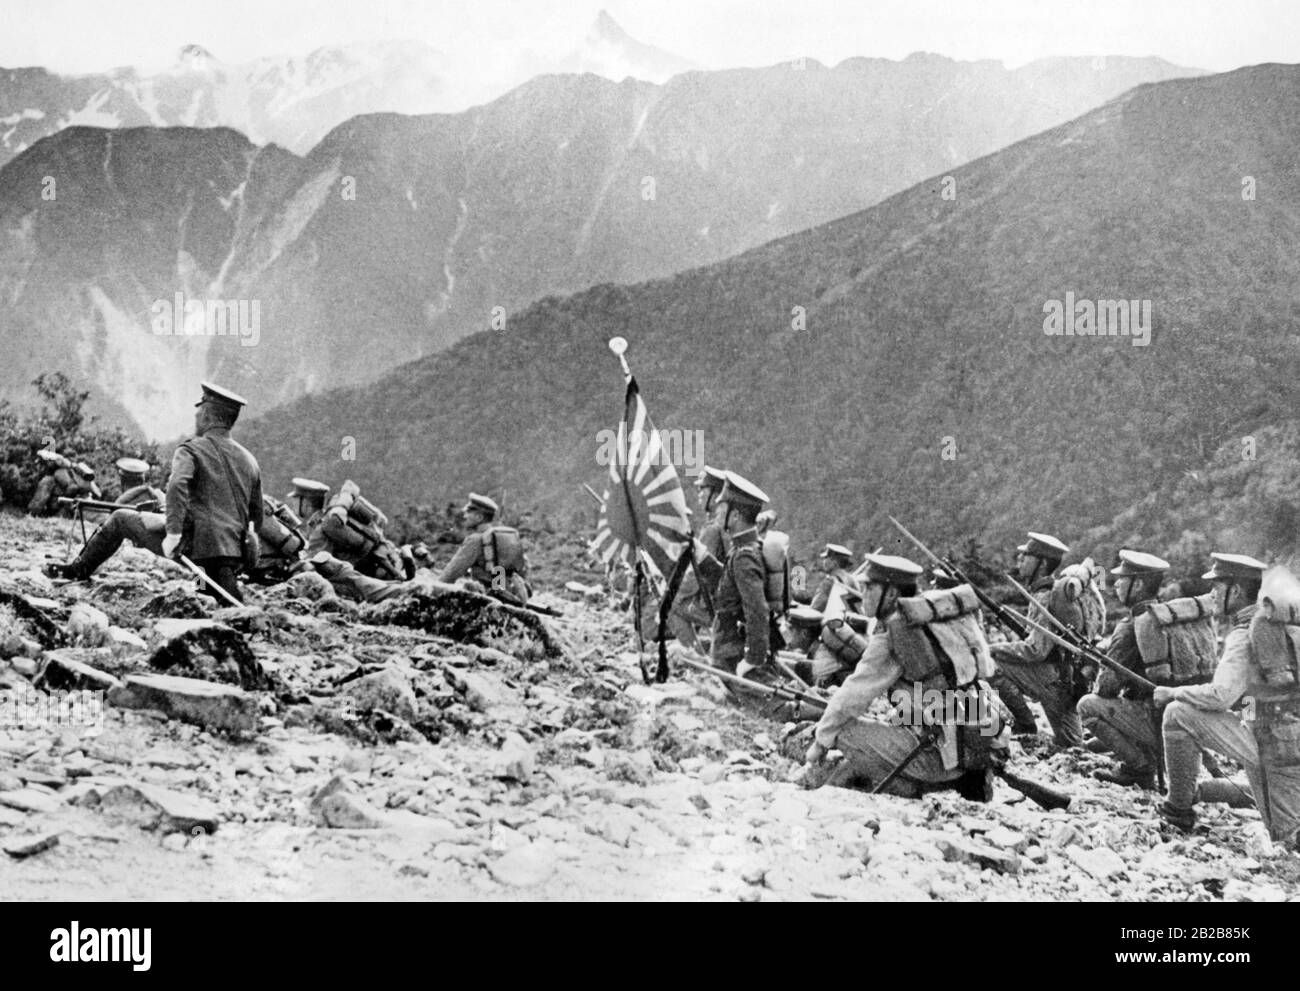 Un groupe de soldats japonais lors d'une manœuvre d'entraînement sur le terrain dans une région montagneuse du Japon. L'un d'eux porte le drapeau de l'armée impériale japonaise. Banque D'Images